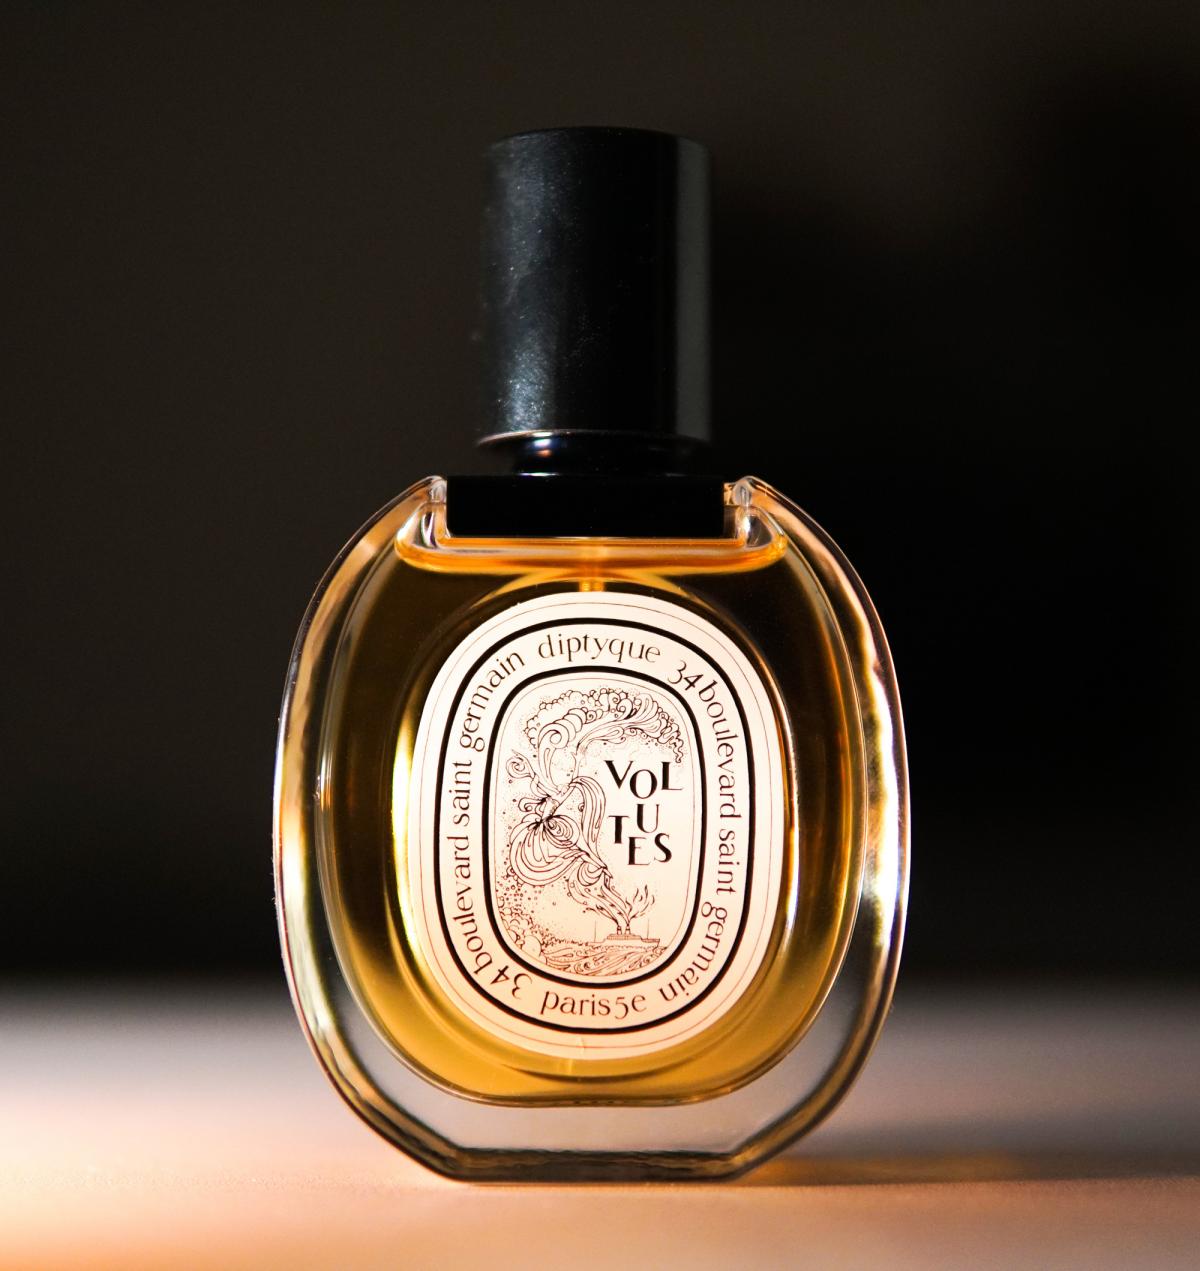 Volutes Eau de Toilette Diptyque perfume - a fragrance for women and